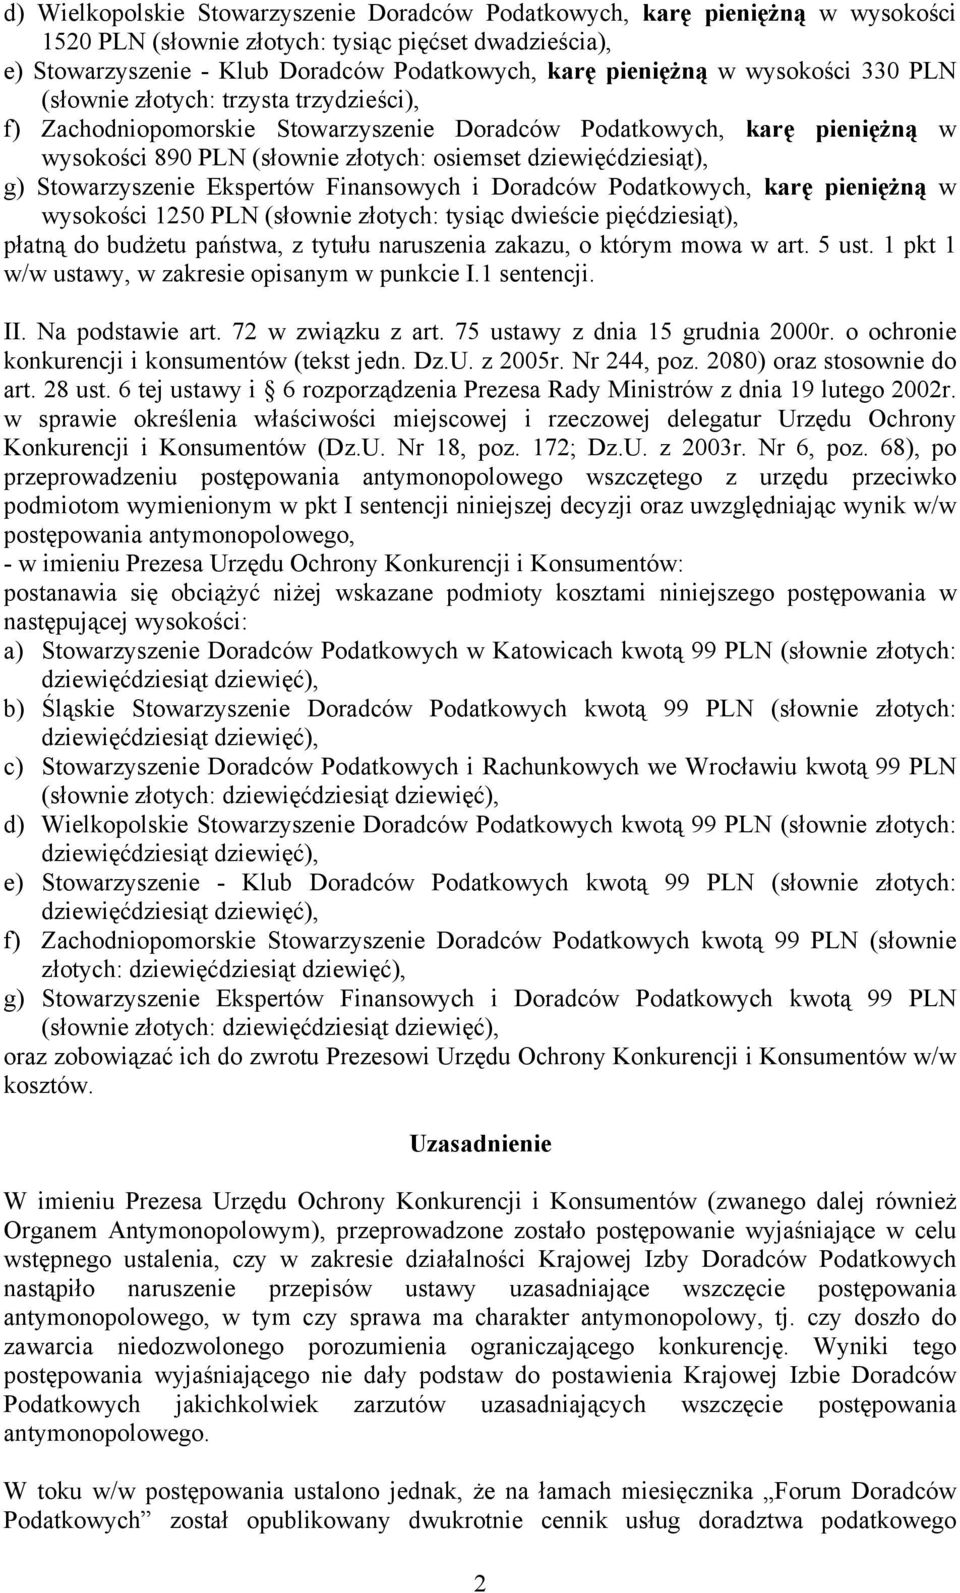 g) Stowarzyszenie Ekspertów Finansowych i Doradców Podatkowych, karę pieniężną w wysokości 1250 PLN (słownie złotych: tysiąc dwieście pięćdziesiąt), płatną do budżetu państwa, z tytułu naruszenia